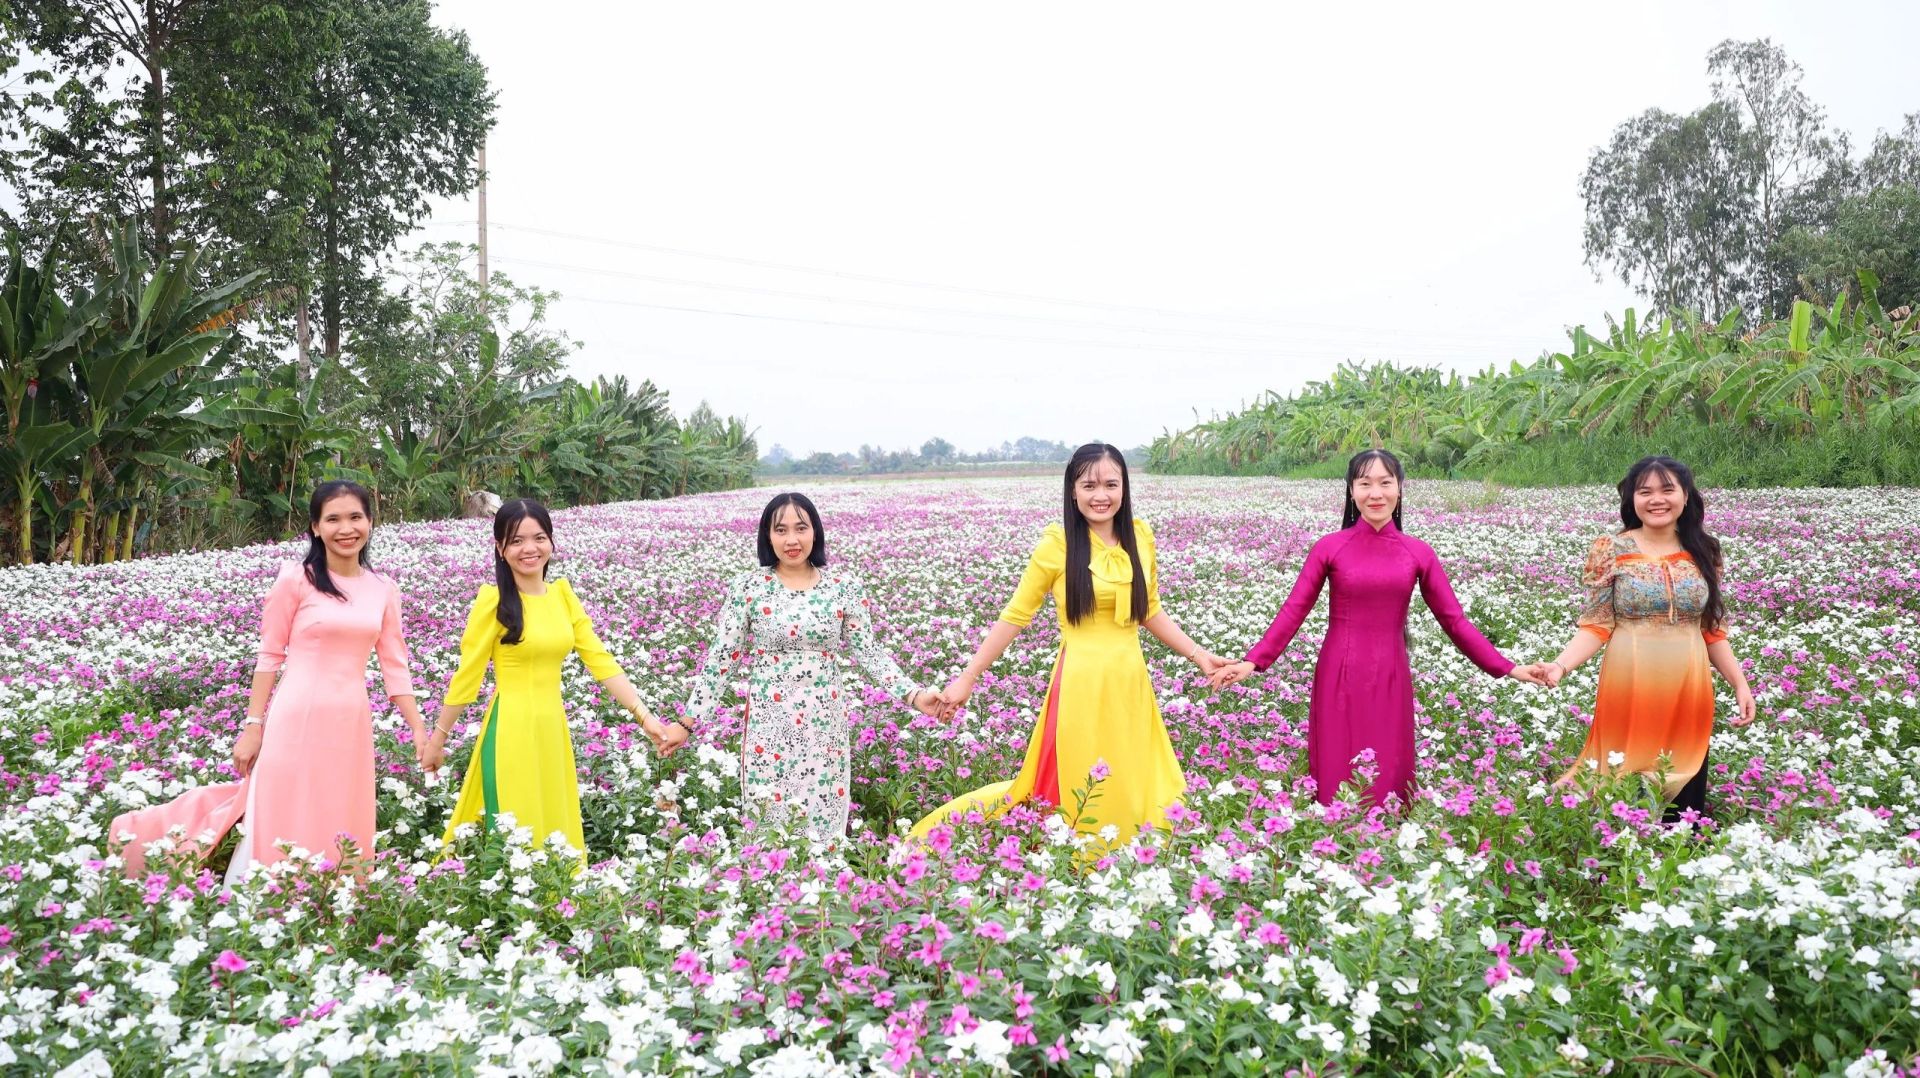 Giáo viên Trường THPT Thuận Hưng, quận Thốt Nốt đến vườn hoa dừa cạn để lưu lại hình ảnh đẹp, cũng như quảng bá cảnh đẹp của quận nhà.